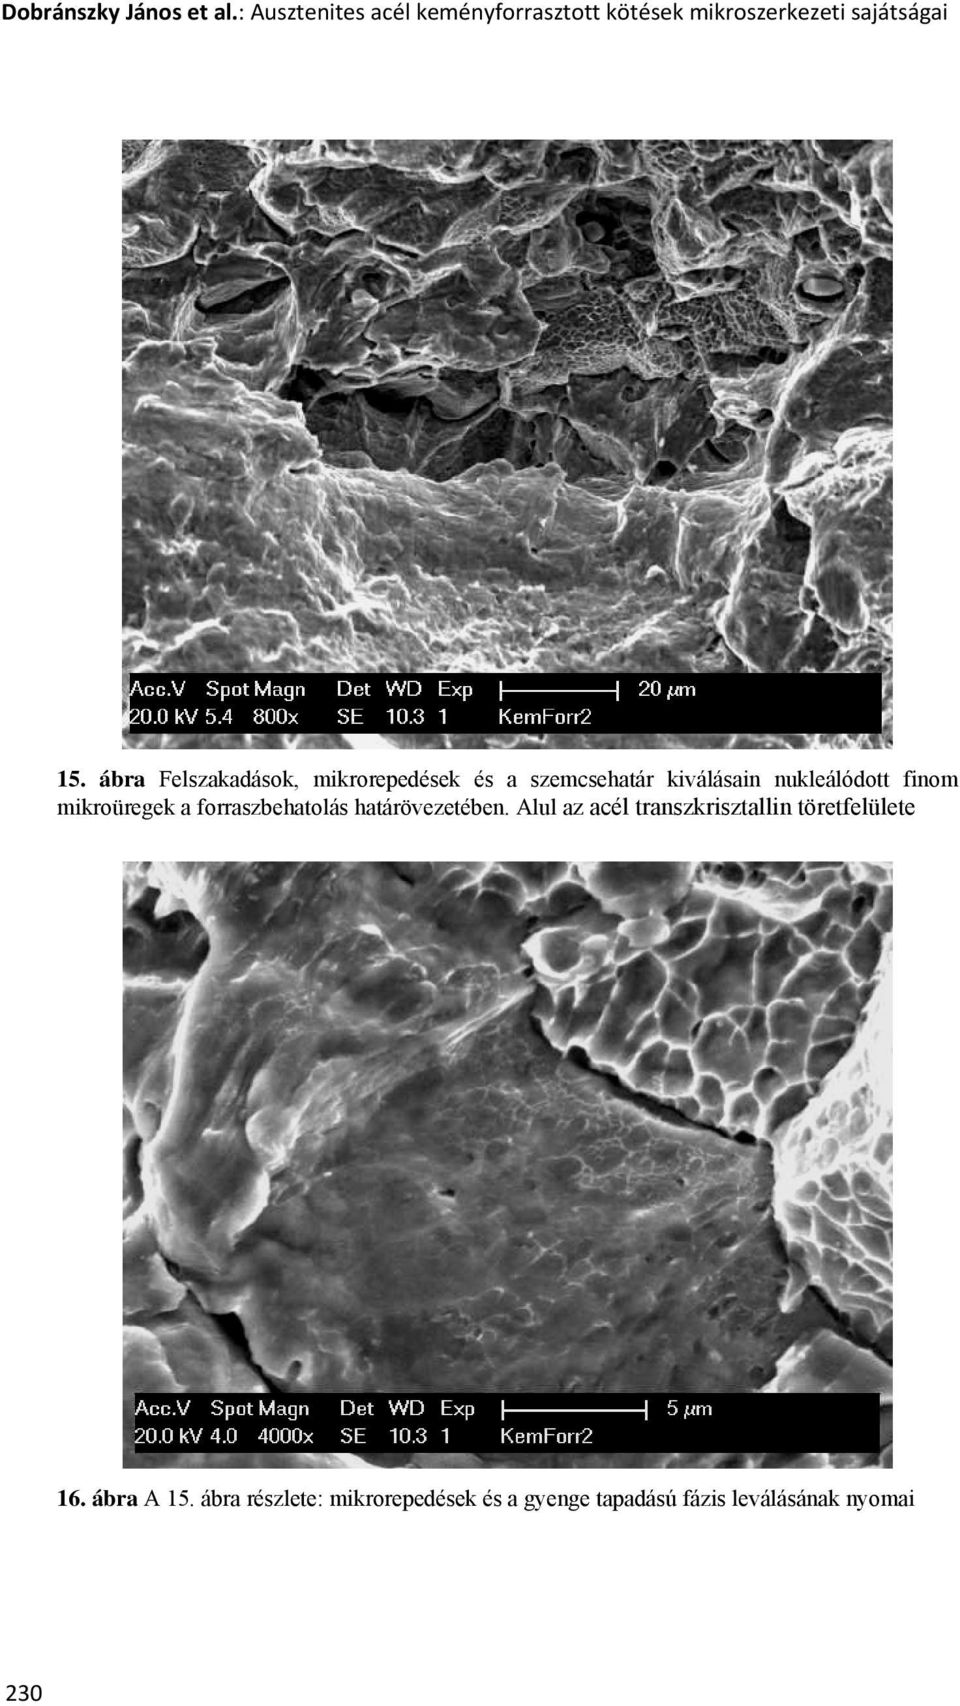 Ausztenites acél keményforrasztott kötések mikroszerkezeti sajátságai - PDF  Ingyenes letöltés